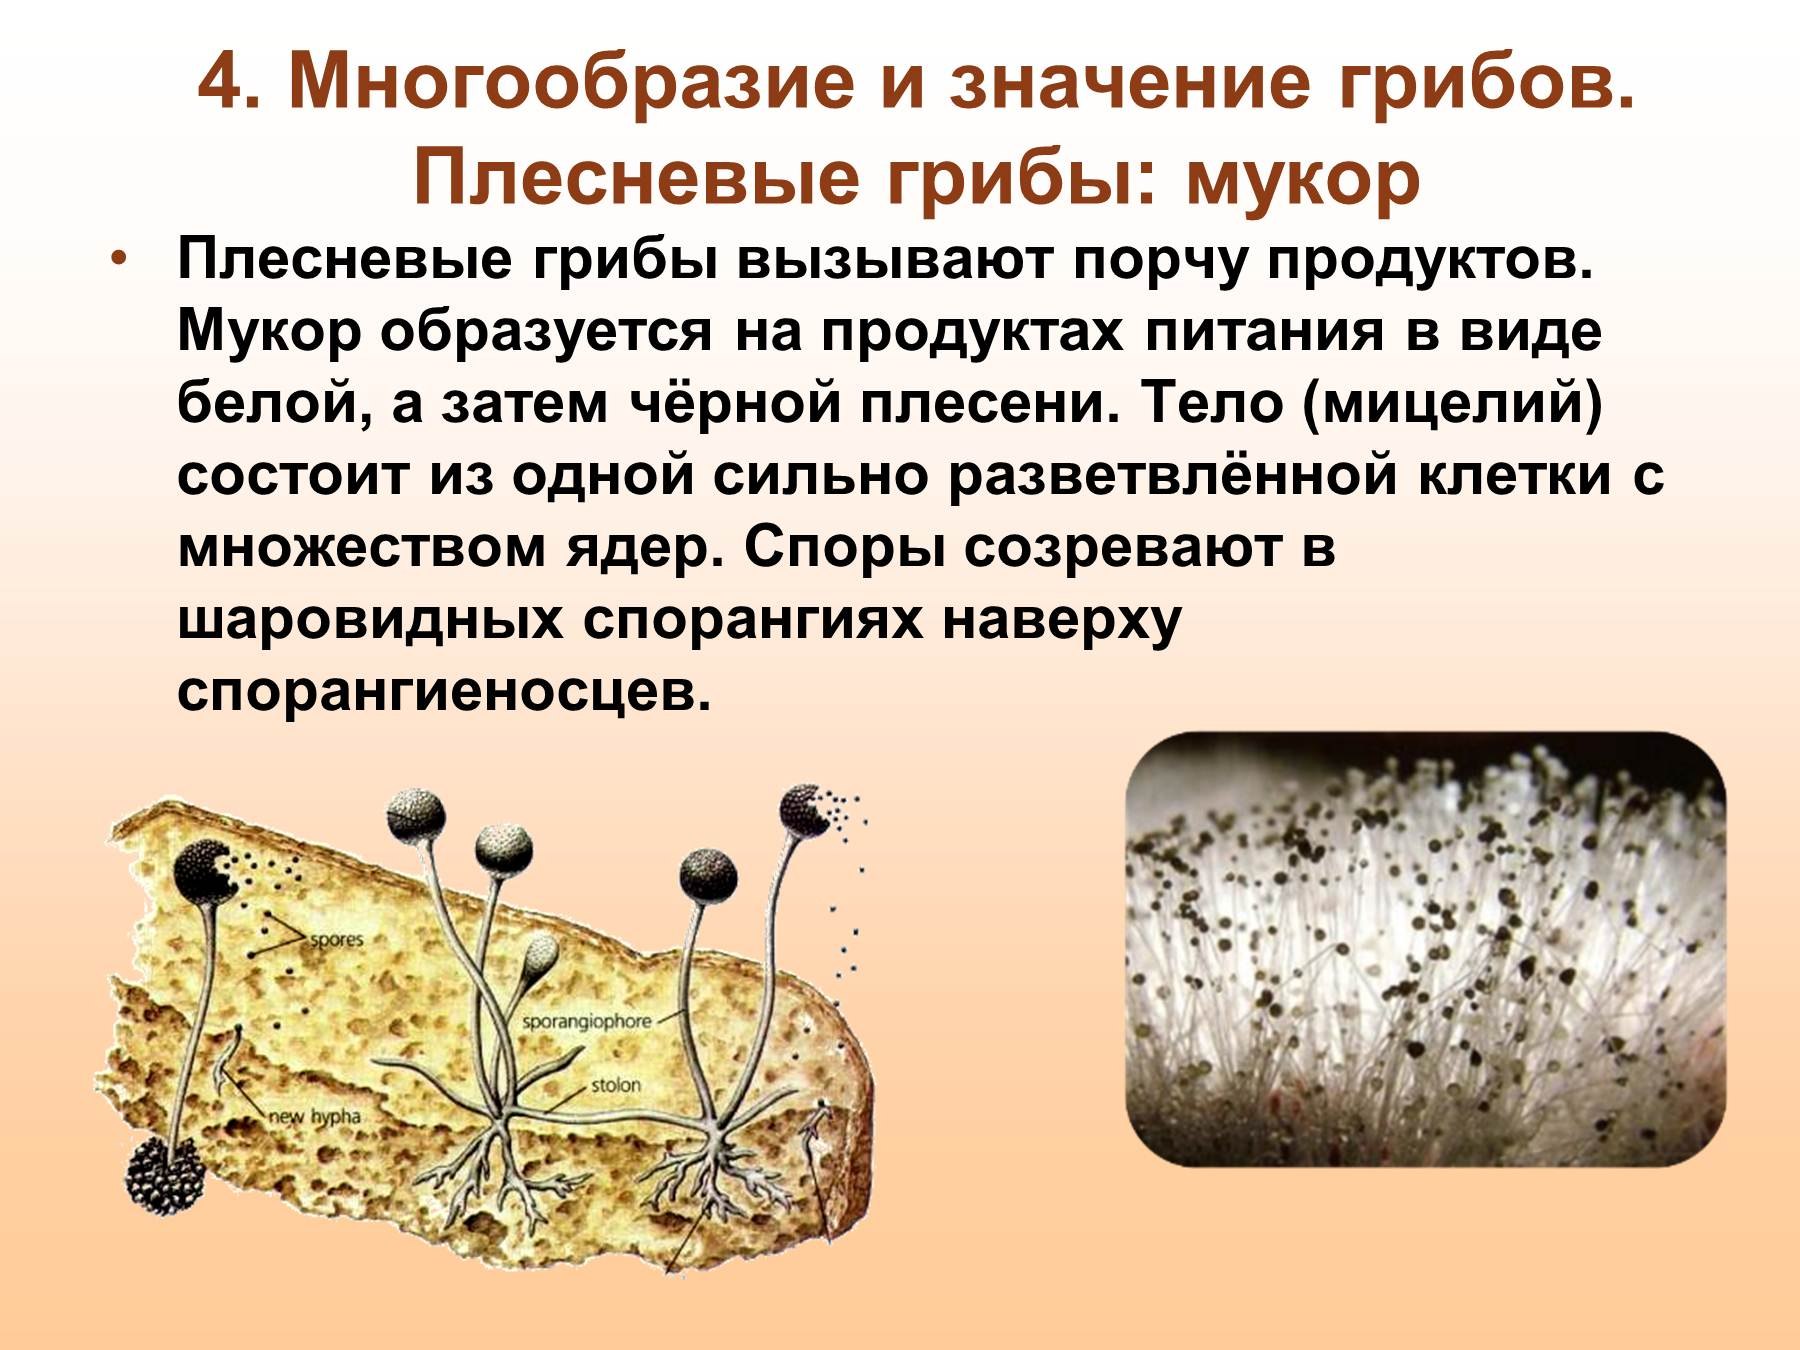 Плесневые грибы представители. Царство грибы мукора. Гриб мукор царство. Плесневые грибы Mucor. Плесень гриб мукор.